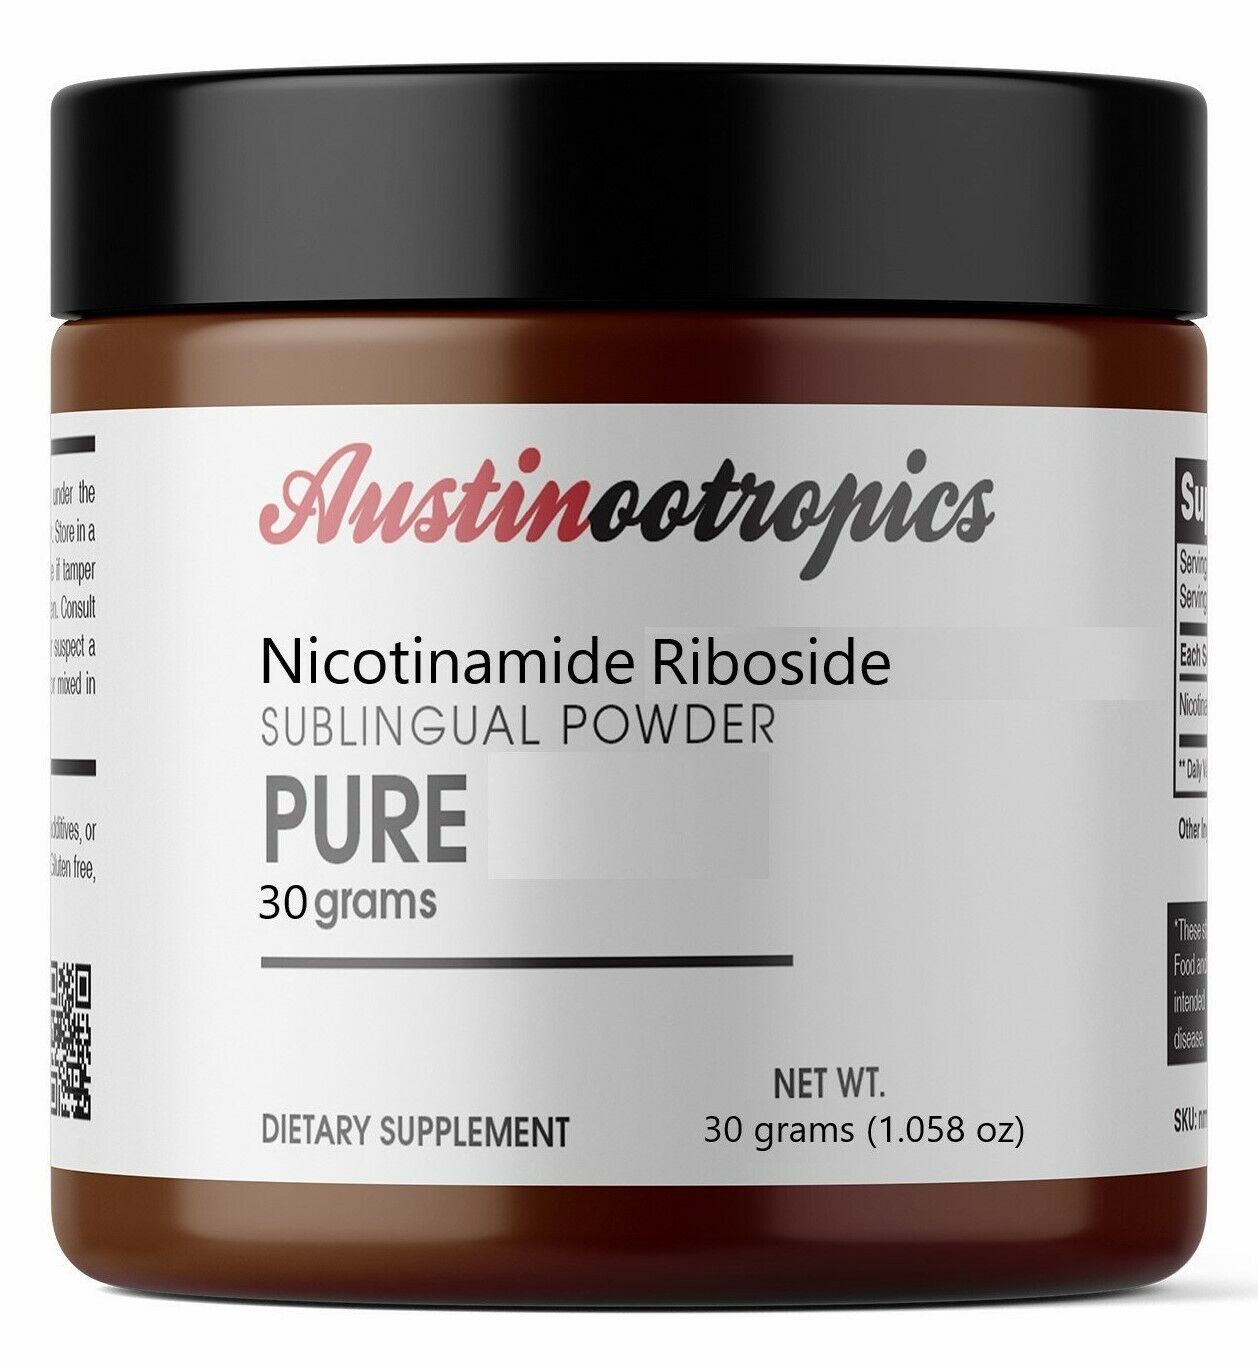 NR - Nicotinamide Riboside (60 Grams) - Certified 98% PURE Powder Ilość ograniczona, bardzo popularna